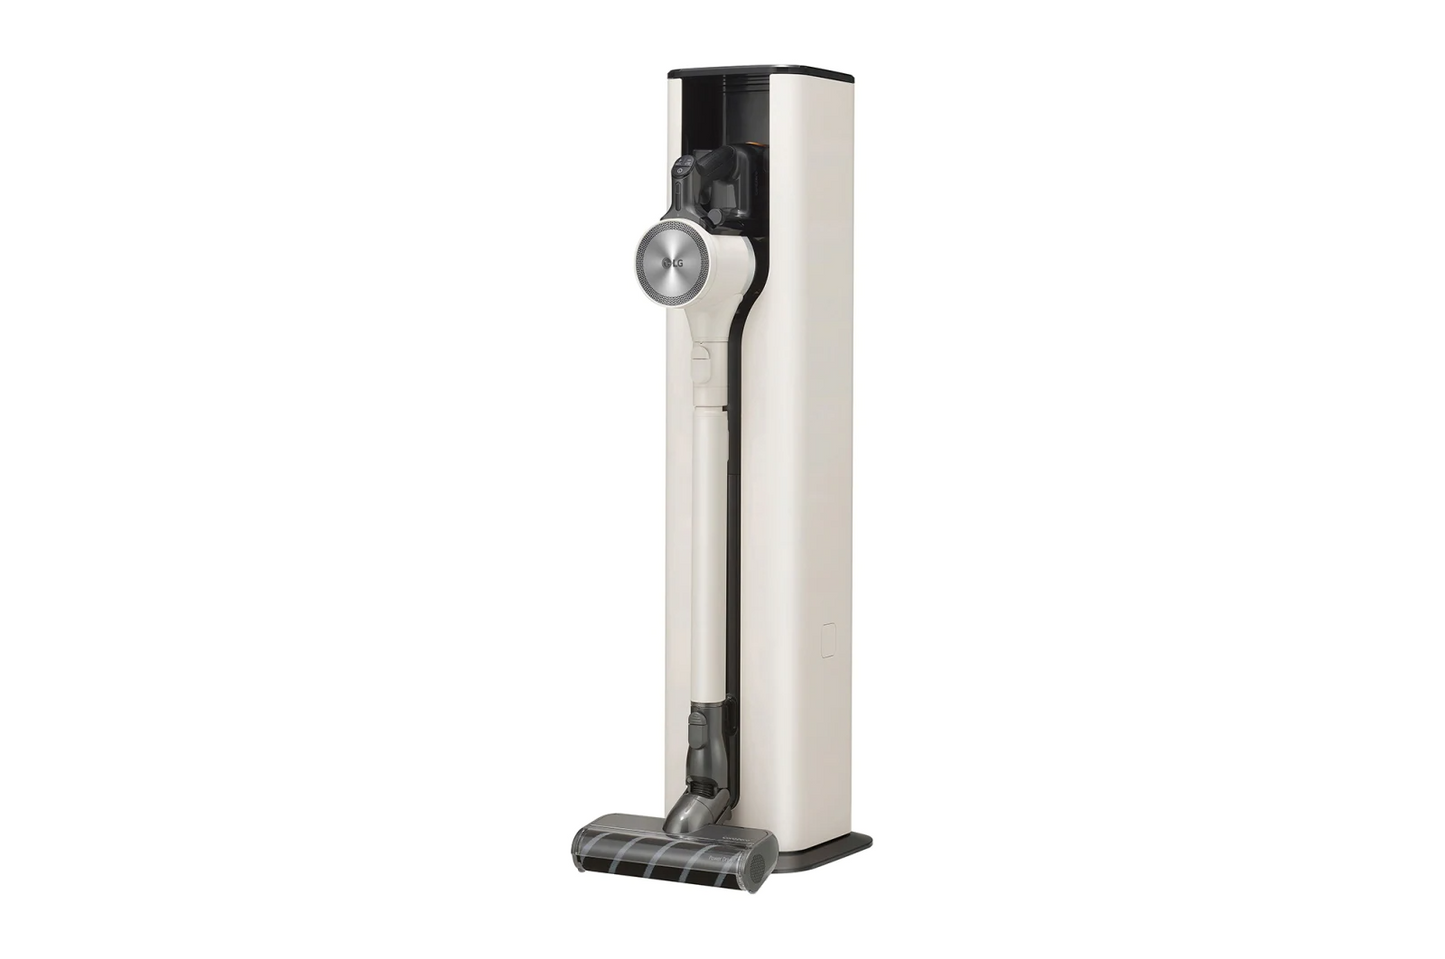 【NEW】LG CordZero™ All-in-One Tower™ 吸塵機備吸頭、洗地、震動寢具吸頭（韓國製造）